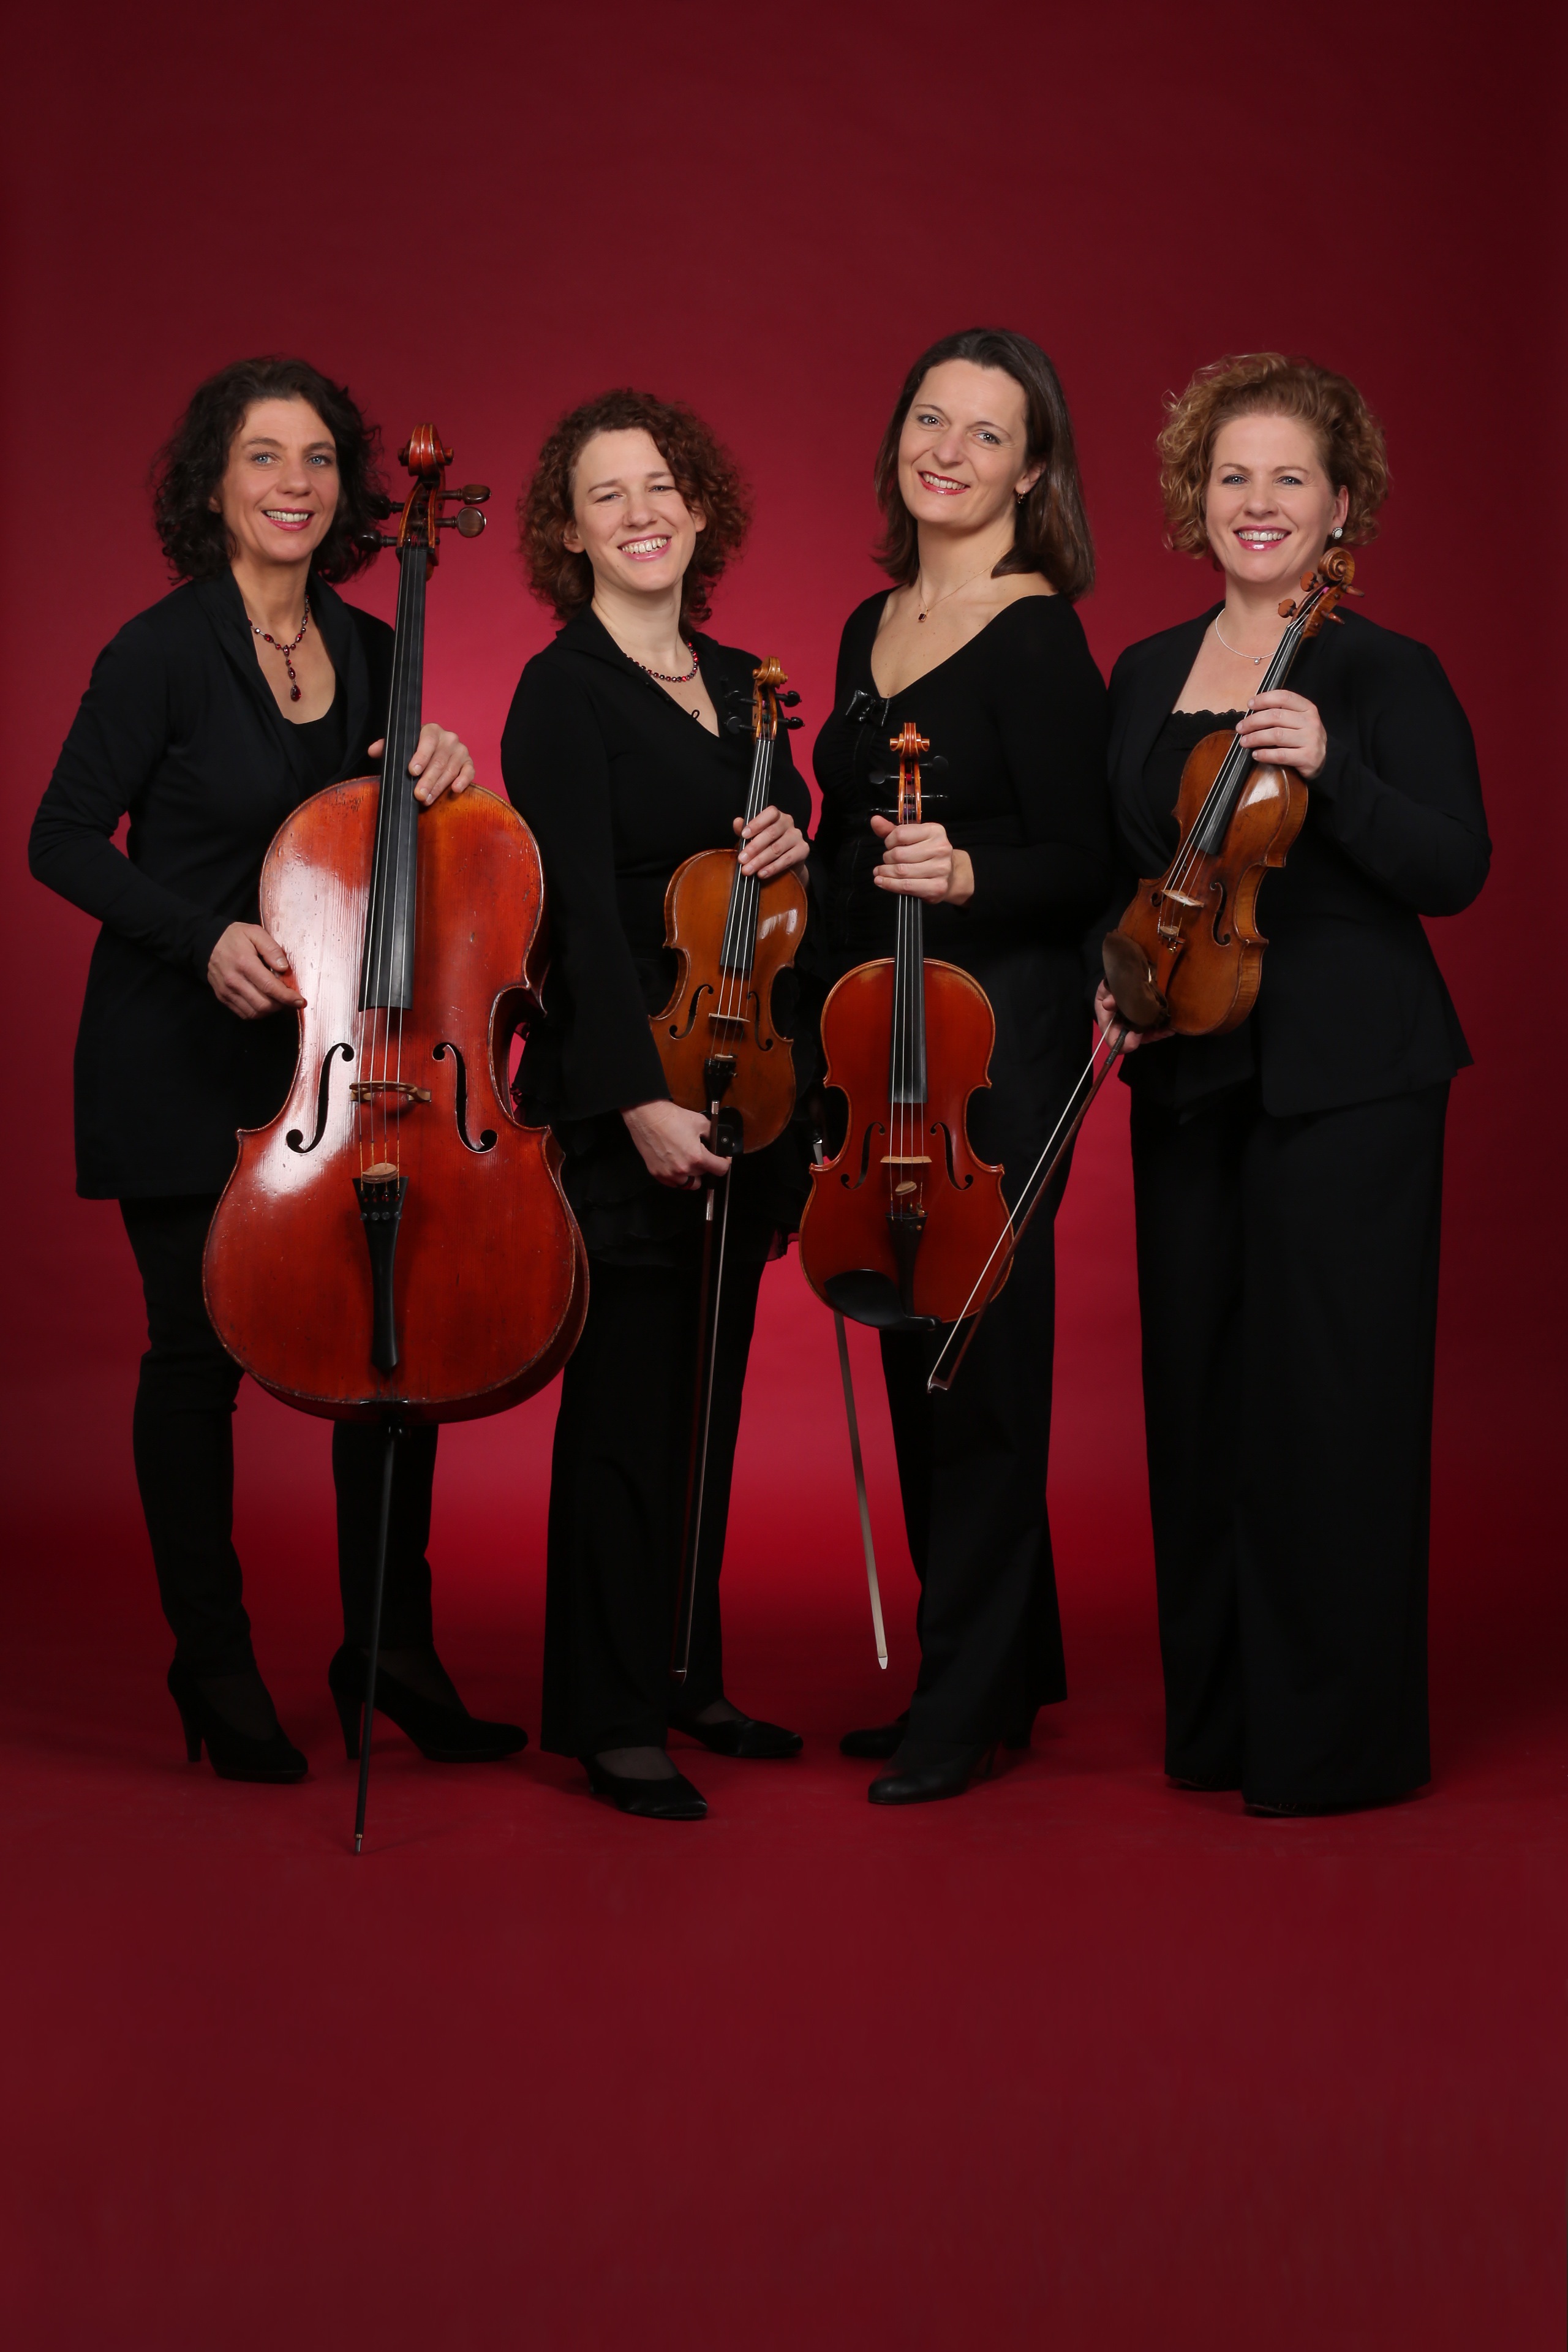 v.l.n.r.: Ulrike Zavelberg (Cello), Jana Andraschke (Viola), Martina Horejsi (Violine), Irmgard Zavelberg (Violine)